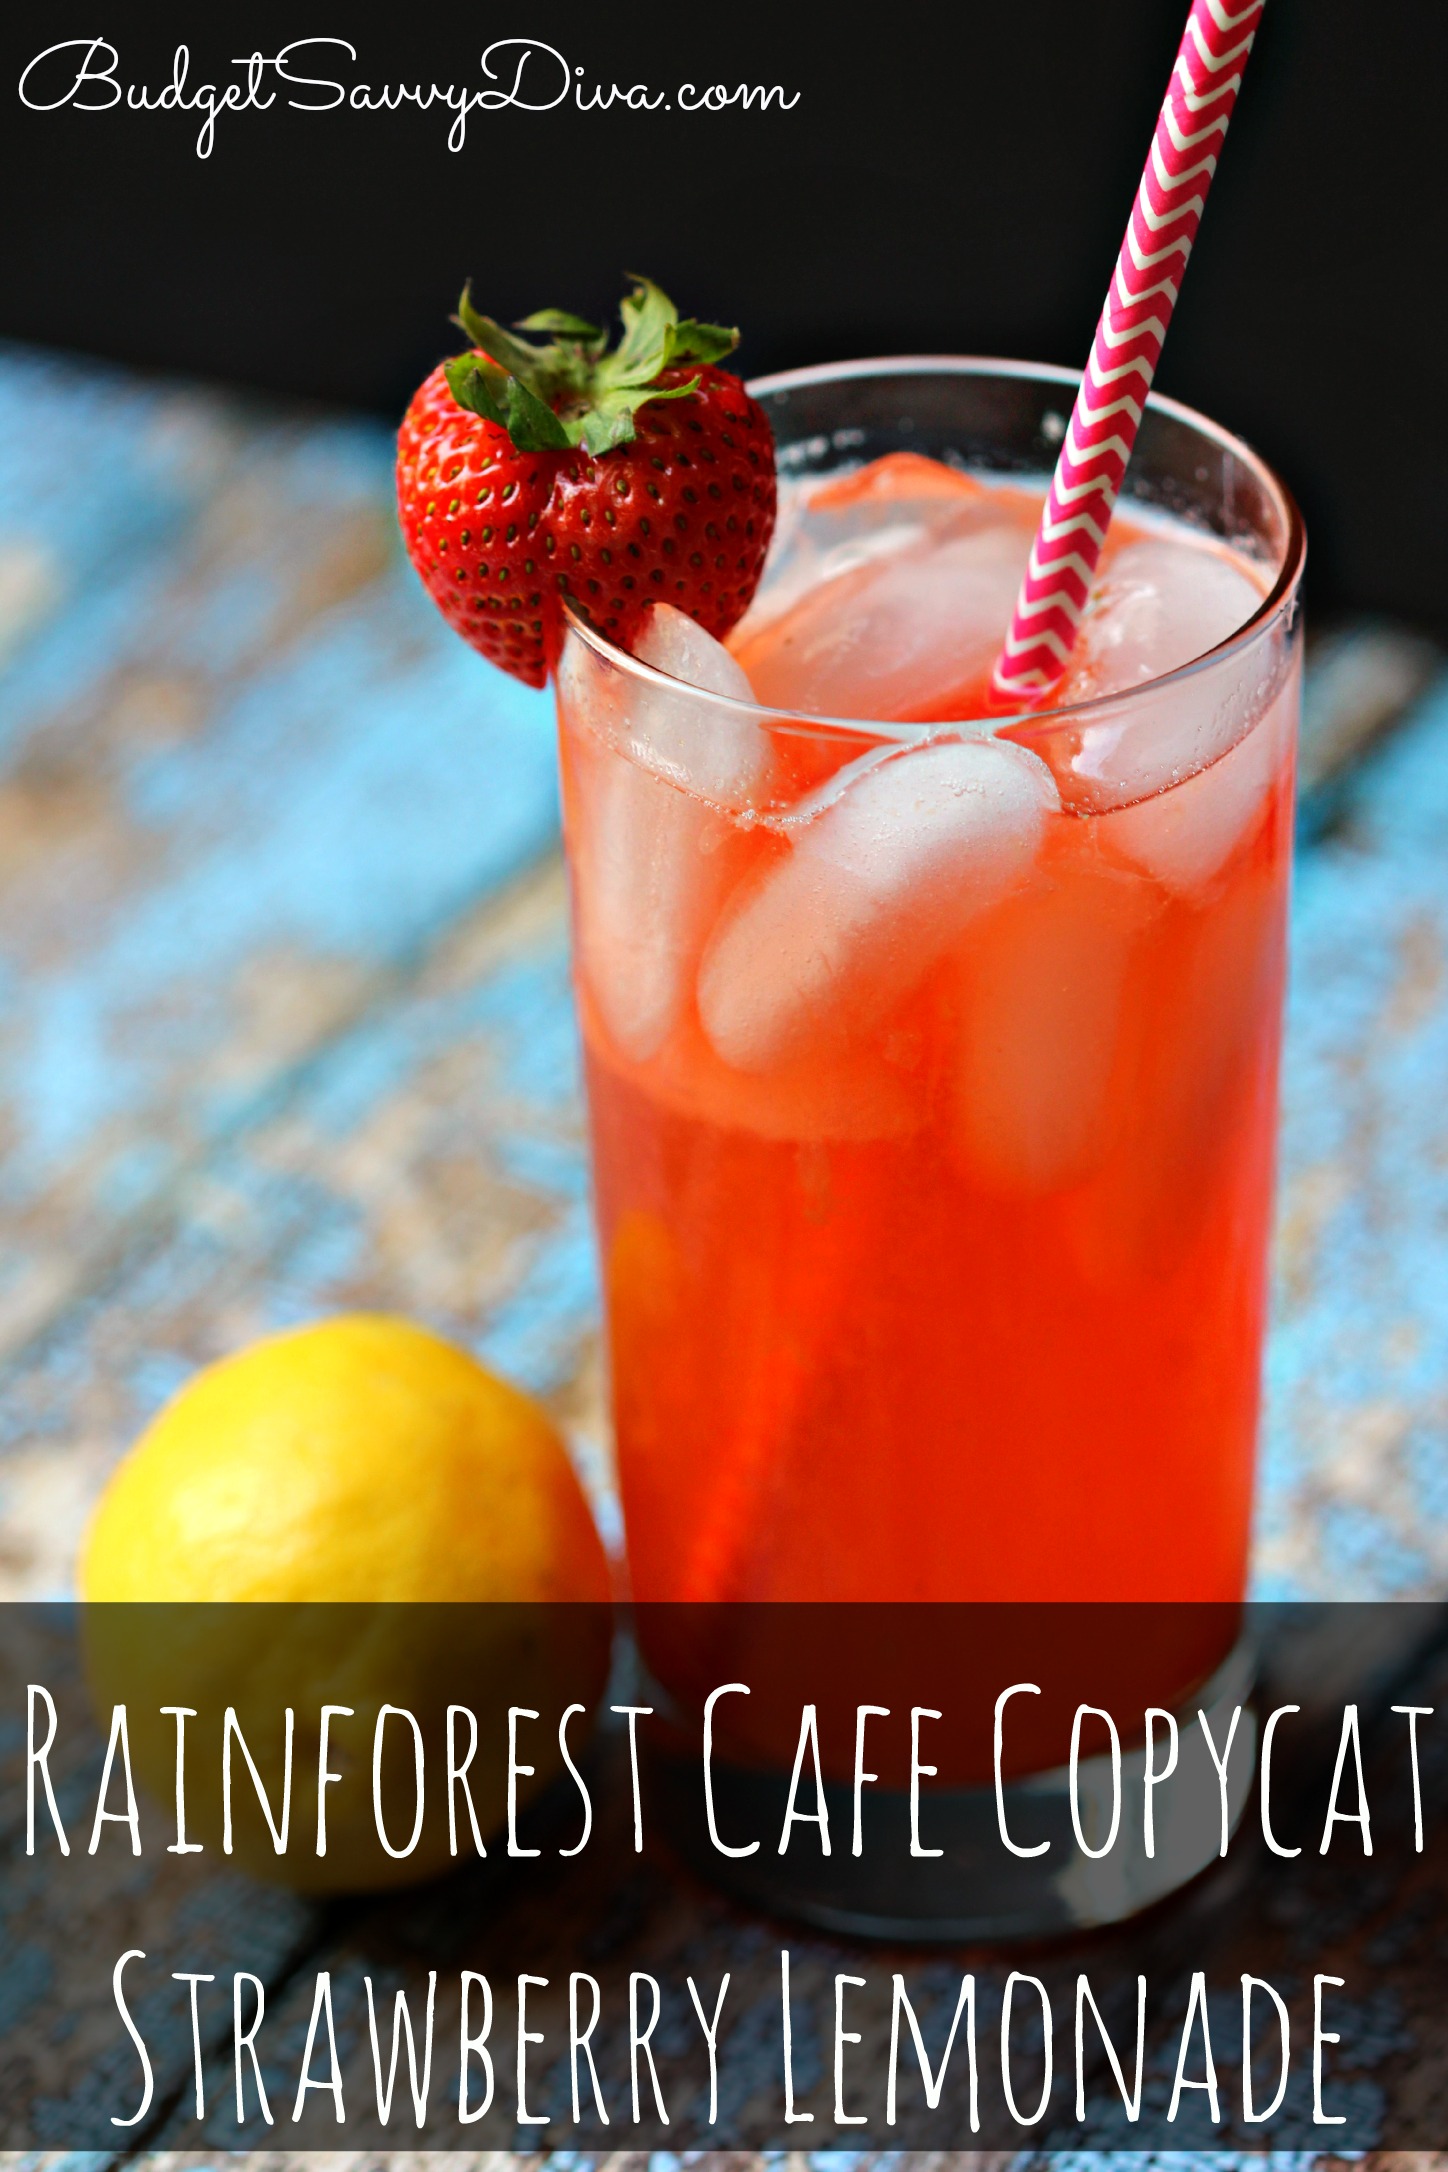 Rainforest Cafe Copycat Strawberry Lemonade Recipe | Budget Savvy Diva